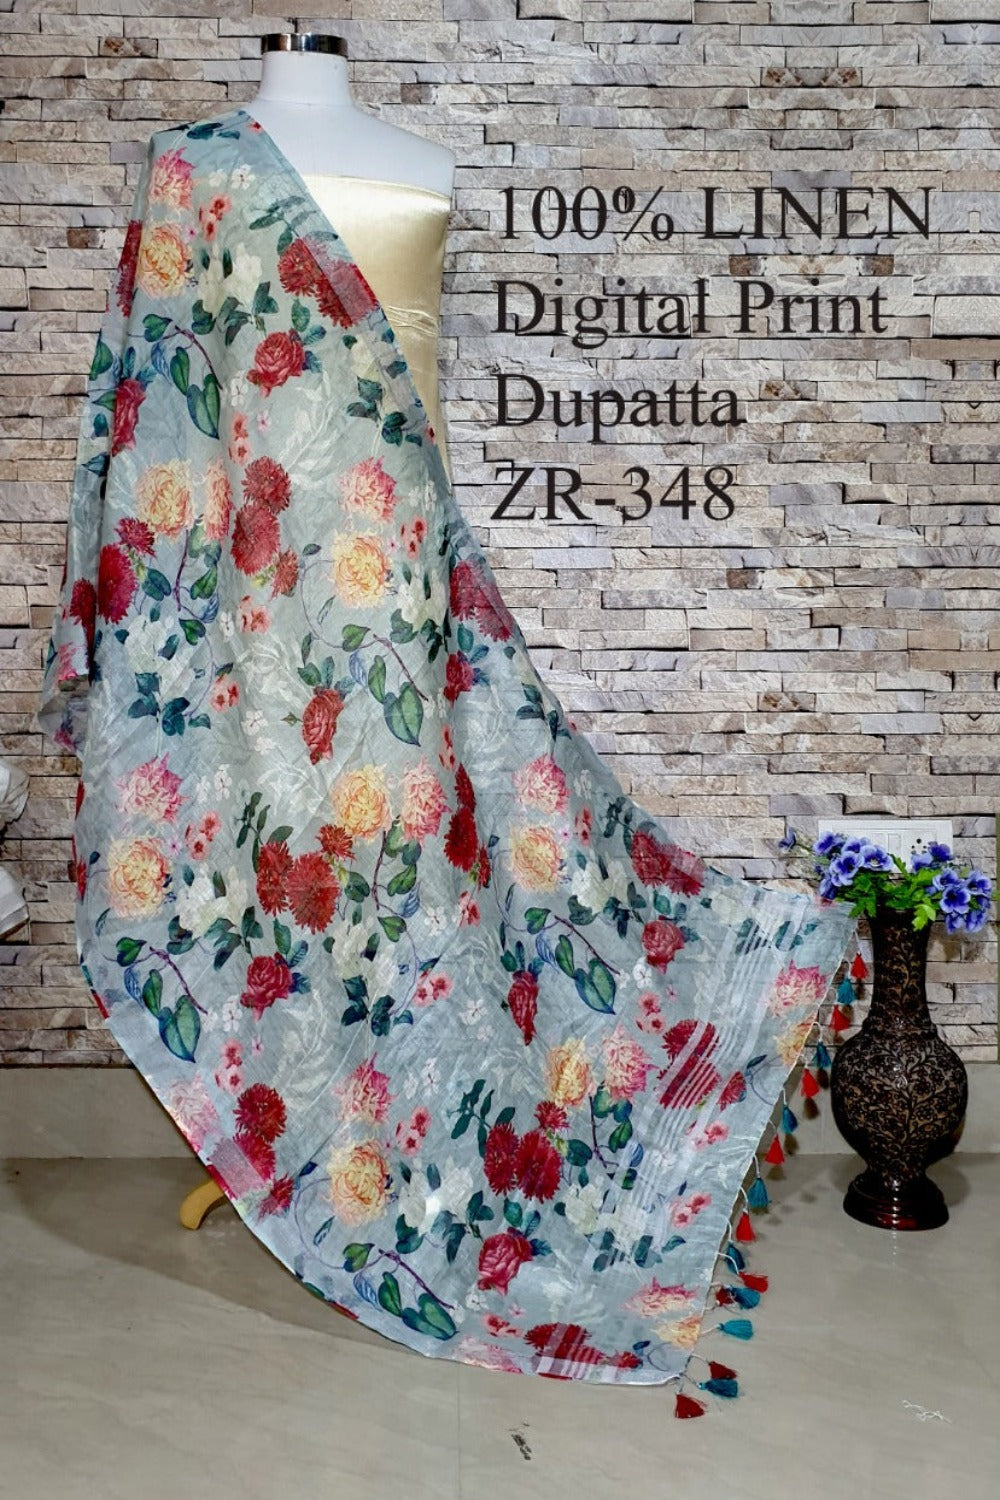 digital printed scarf - linenworldonline.in